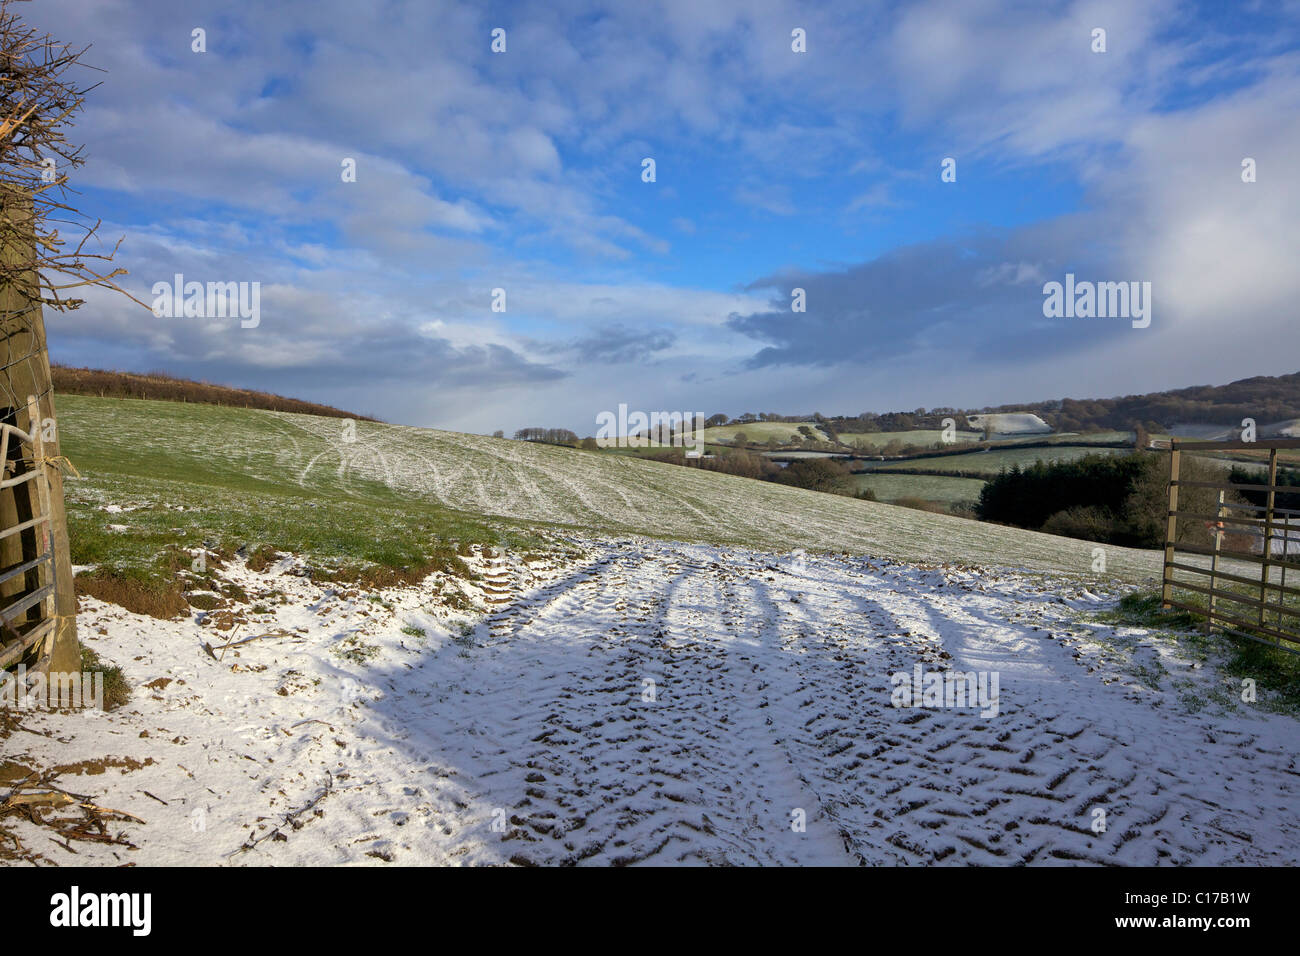 Soleil d'hiver dans les champs, près de Pilsden Pen, Dorset, England, England, UK, Royaume-Uni, GO, Grande-Bretagne, British Isles, Europe Banque D'Images